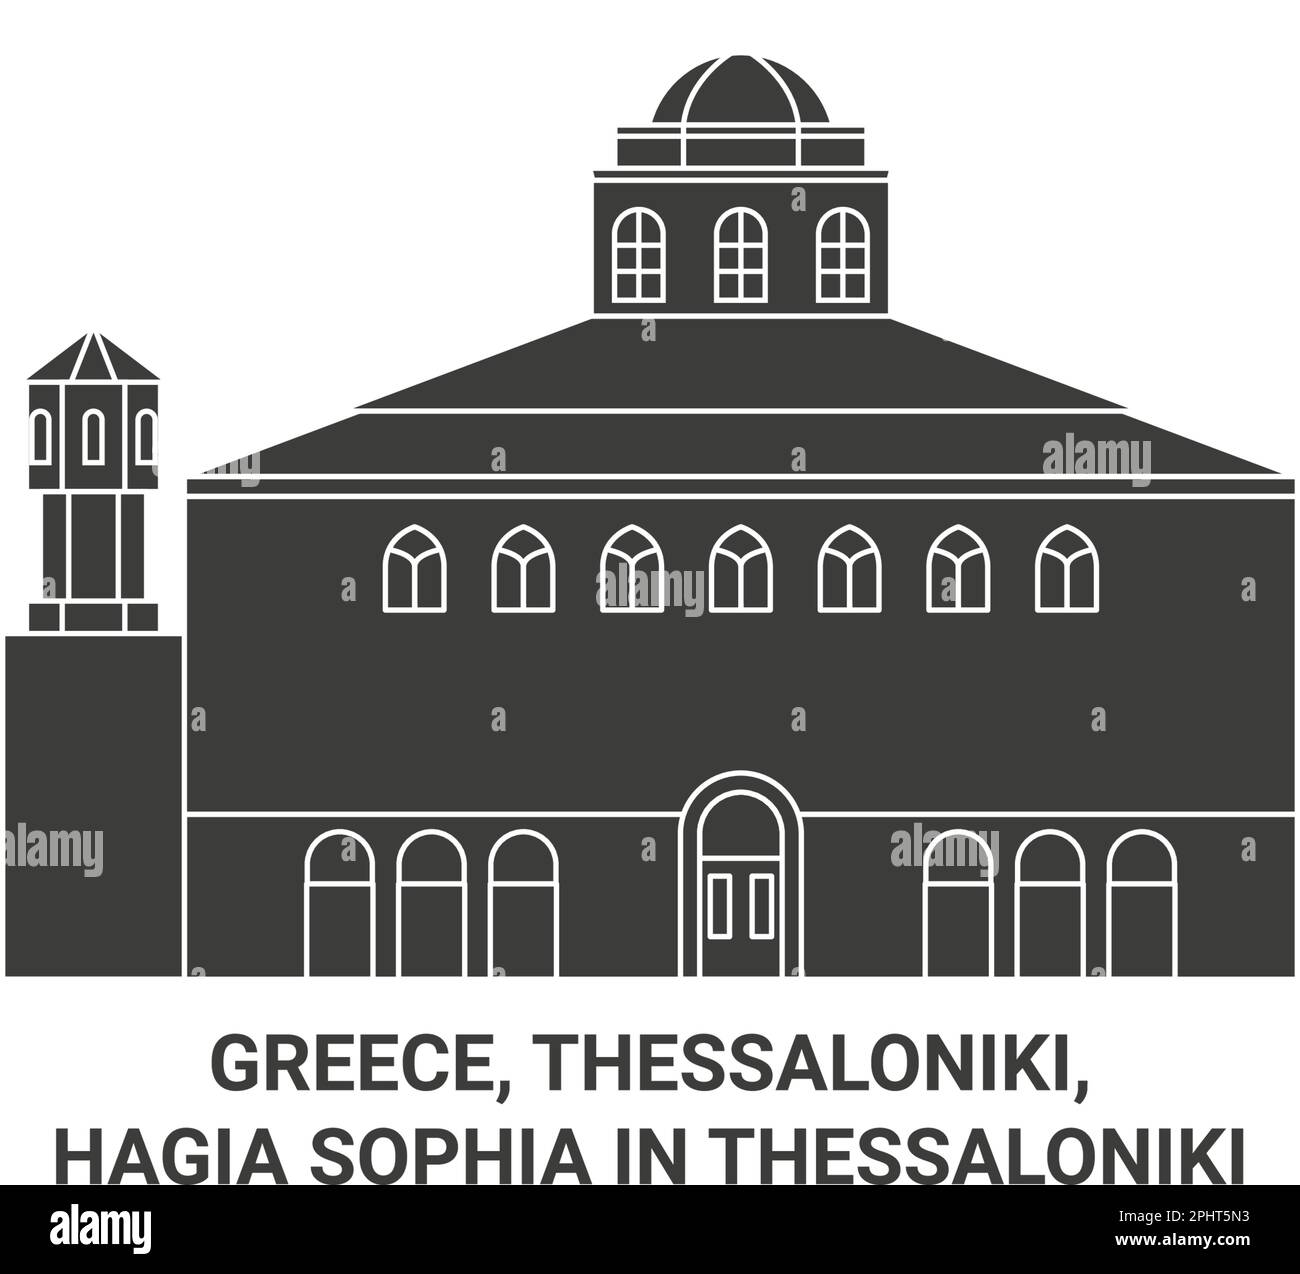 Griechenland, Thessaloniki, Hagia Sophia in Thessaloniki Reise-Wahrzeichen-Vektordarstellung Stock Vektor